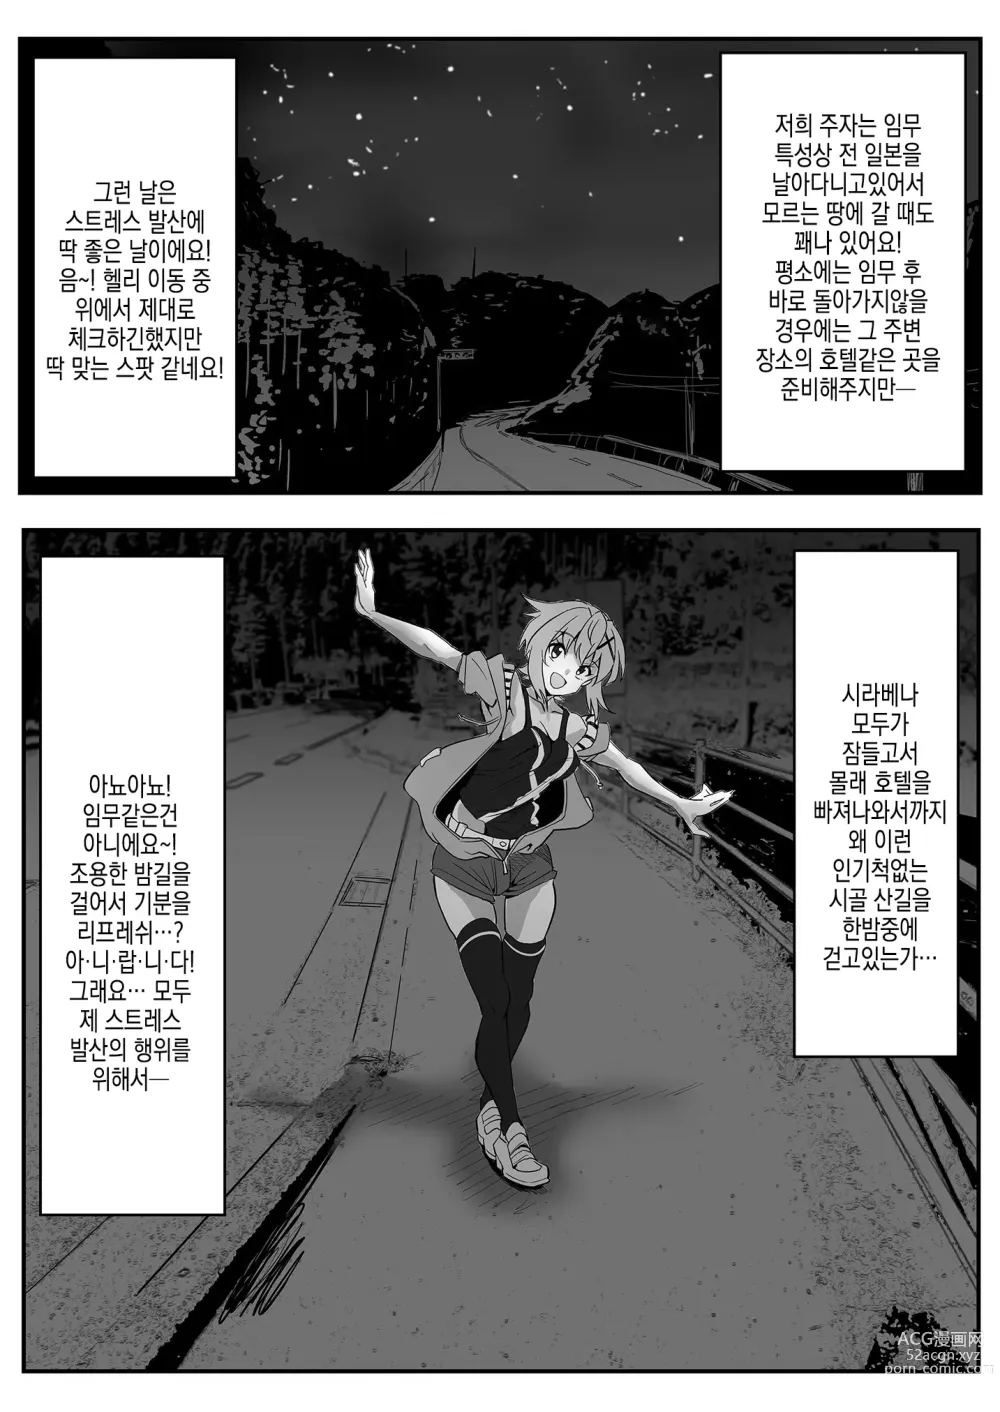 Page 5 of doujinshi 키리 쨩의 산중 편의점 노출 퀘스트